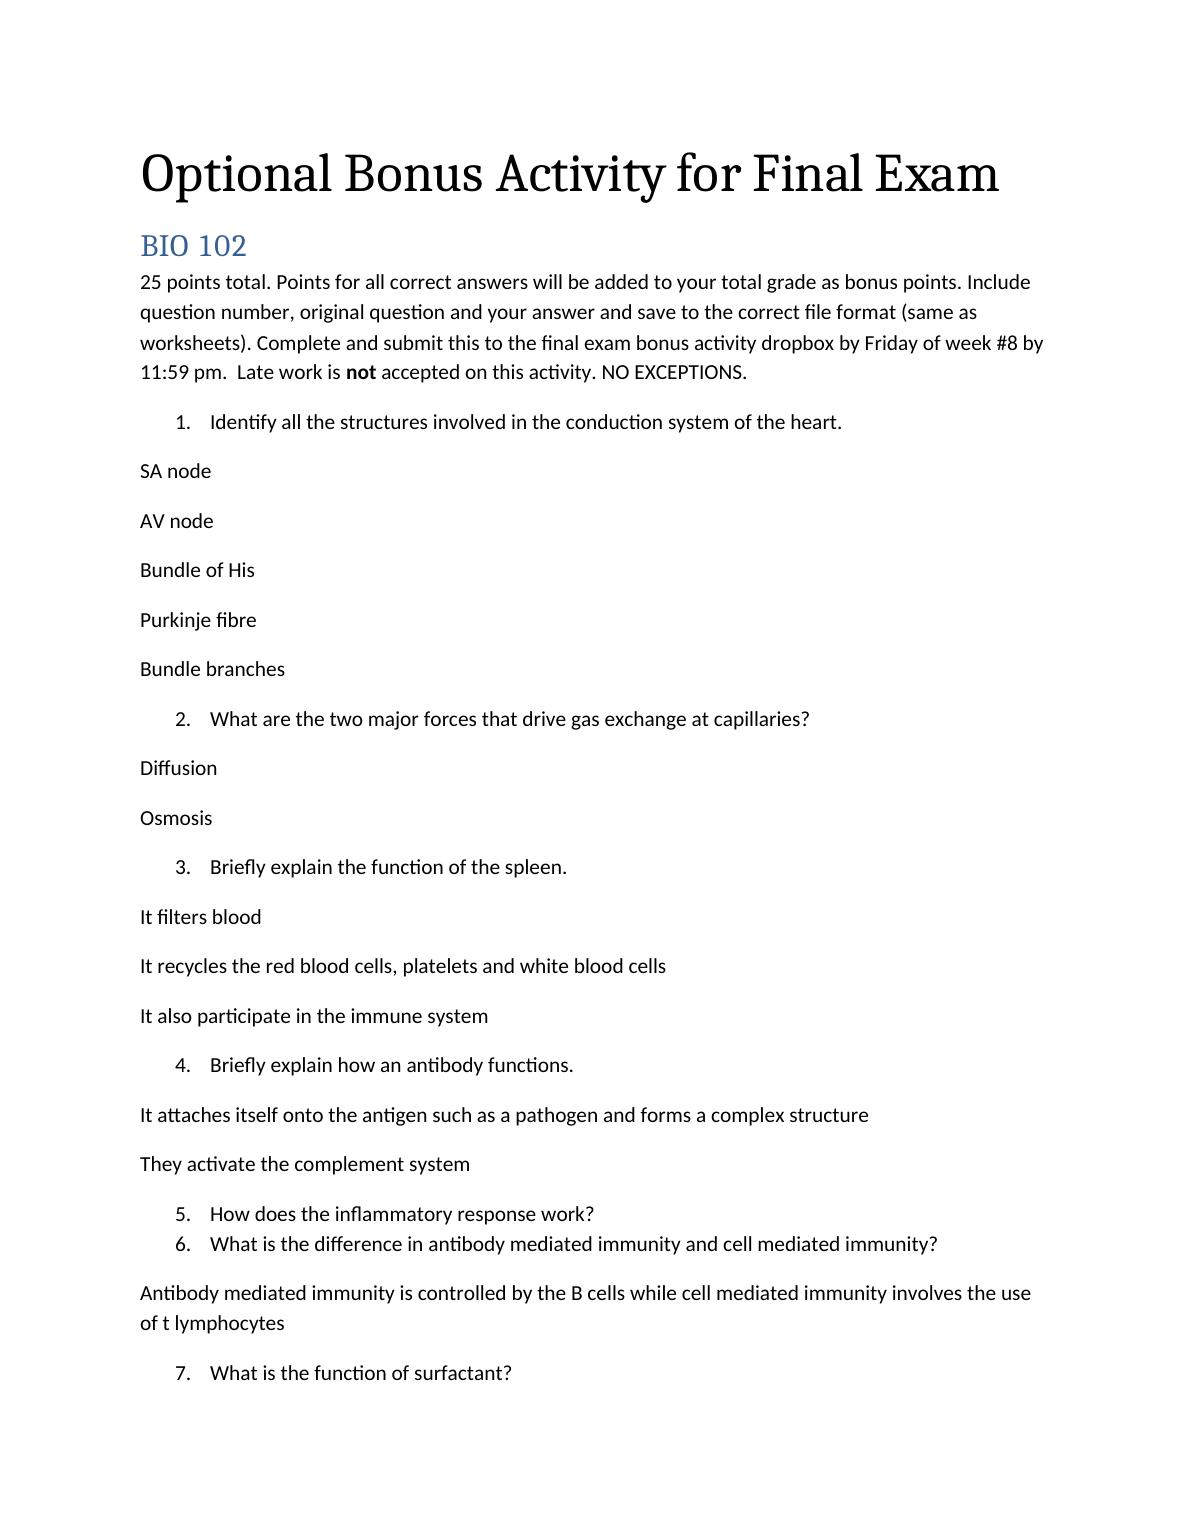 Optional Bonus Activity for Final Exam_1